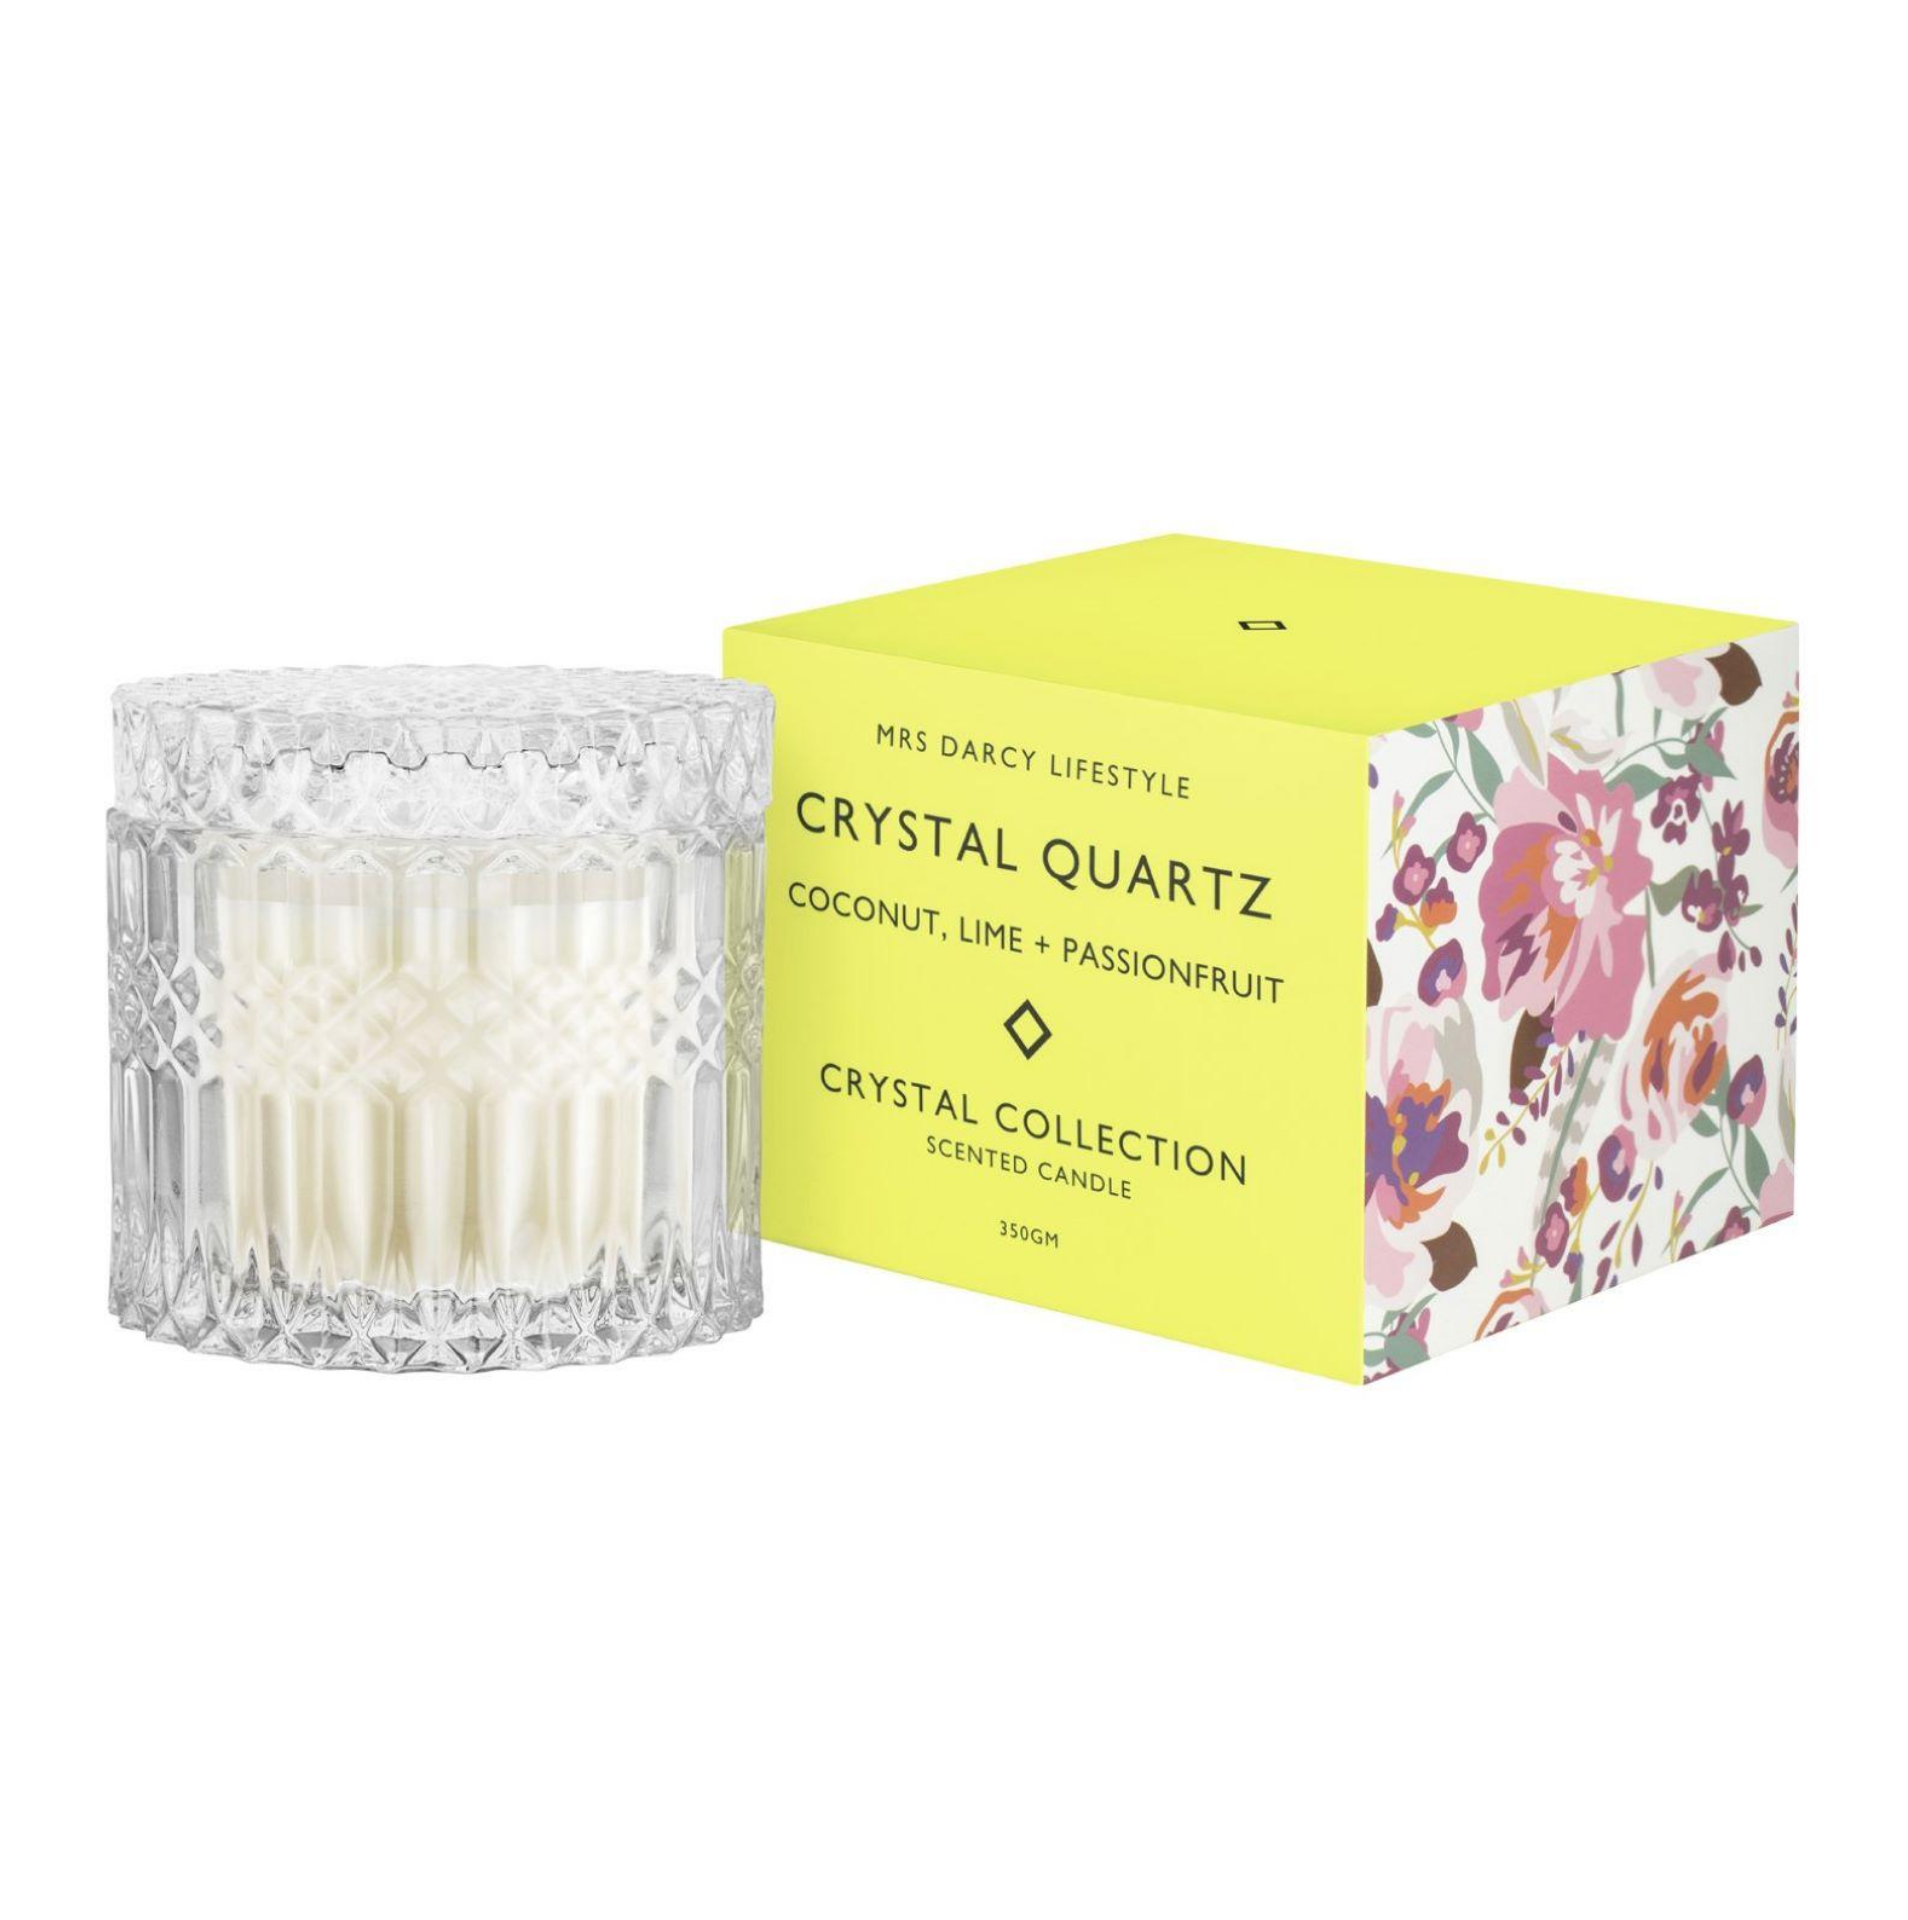 Crystal Quartz + Coconut, Lime & Passionfruit Candle - Large